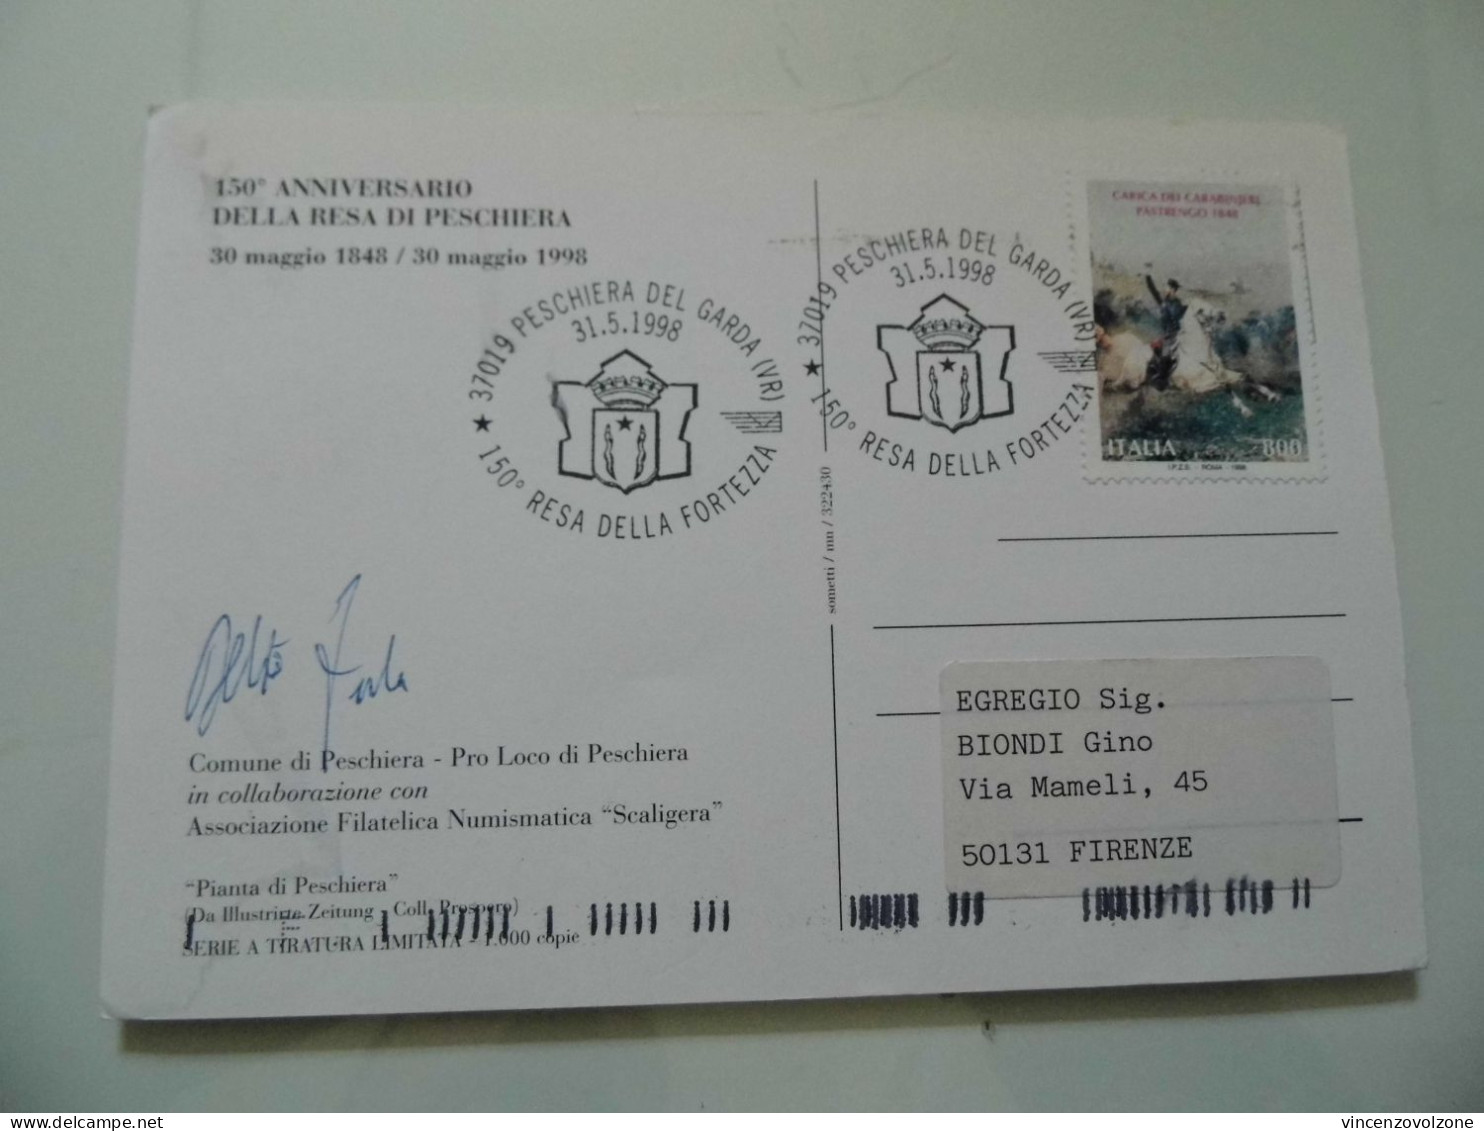 Cartolina Postale "150° ANNIVERSARIO DELLA RESA DI PESCHIERA 1848 - 1998" - 1991-00: Marcofilia